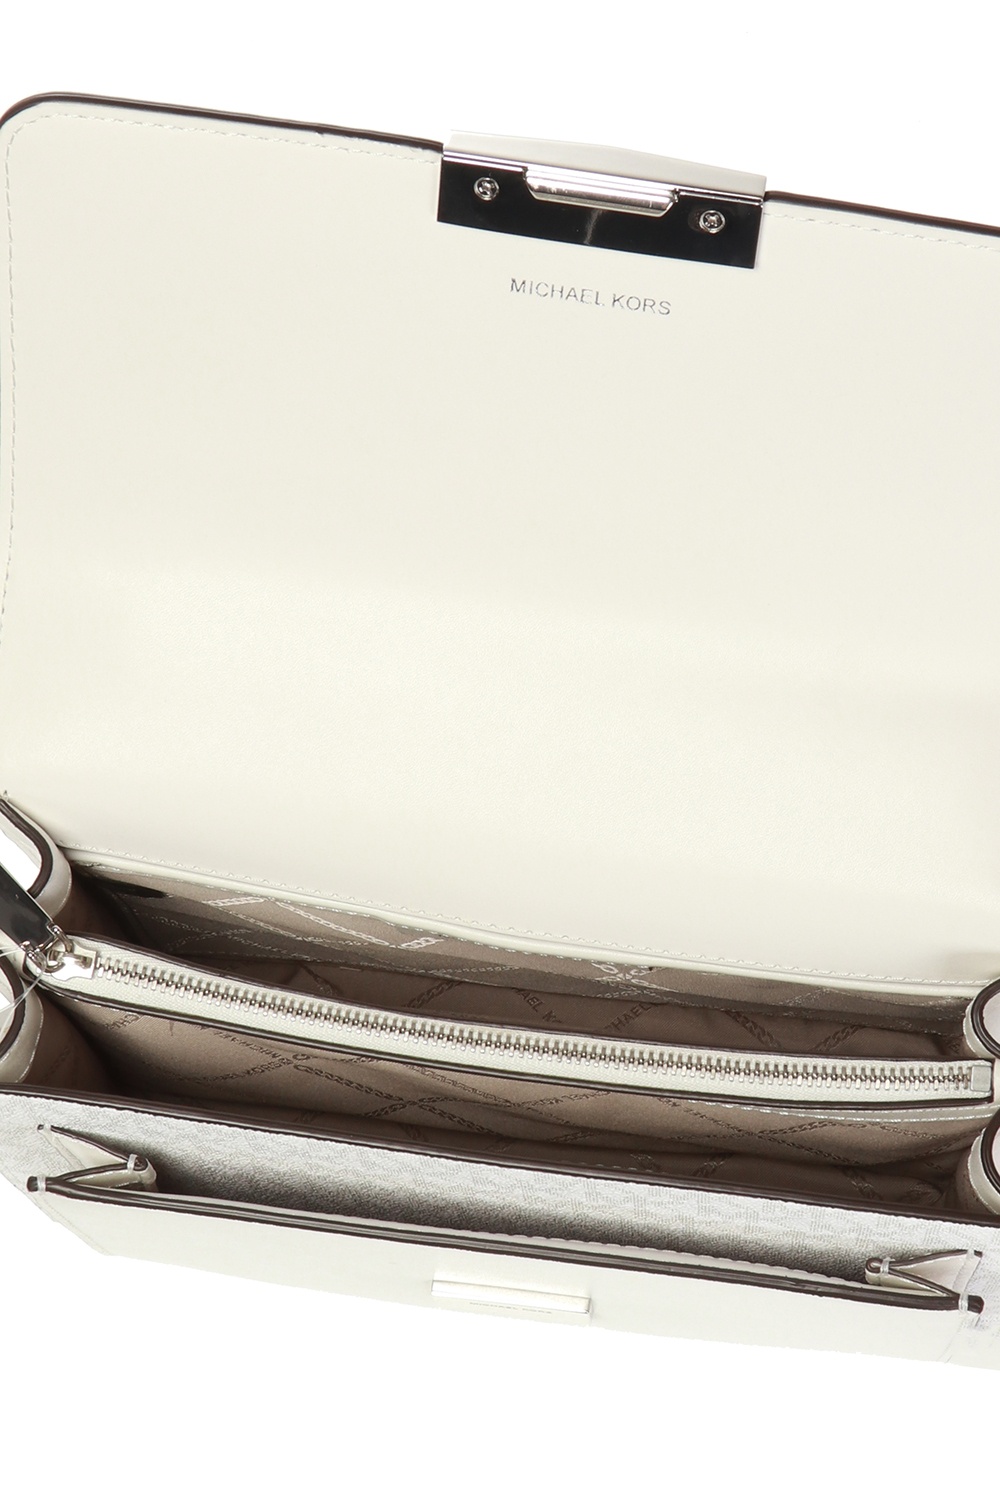 Shoulder bags Michael Kors - Jade L white smooth leather bag - 30S9GJ4L9L085